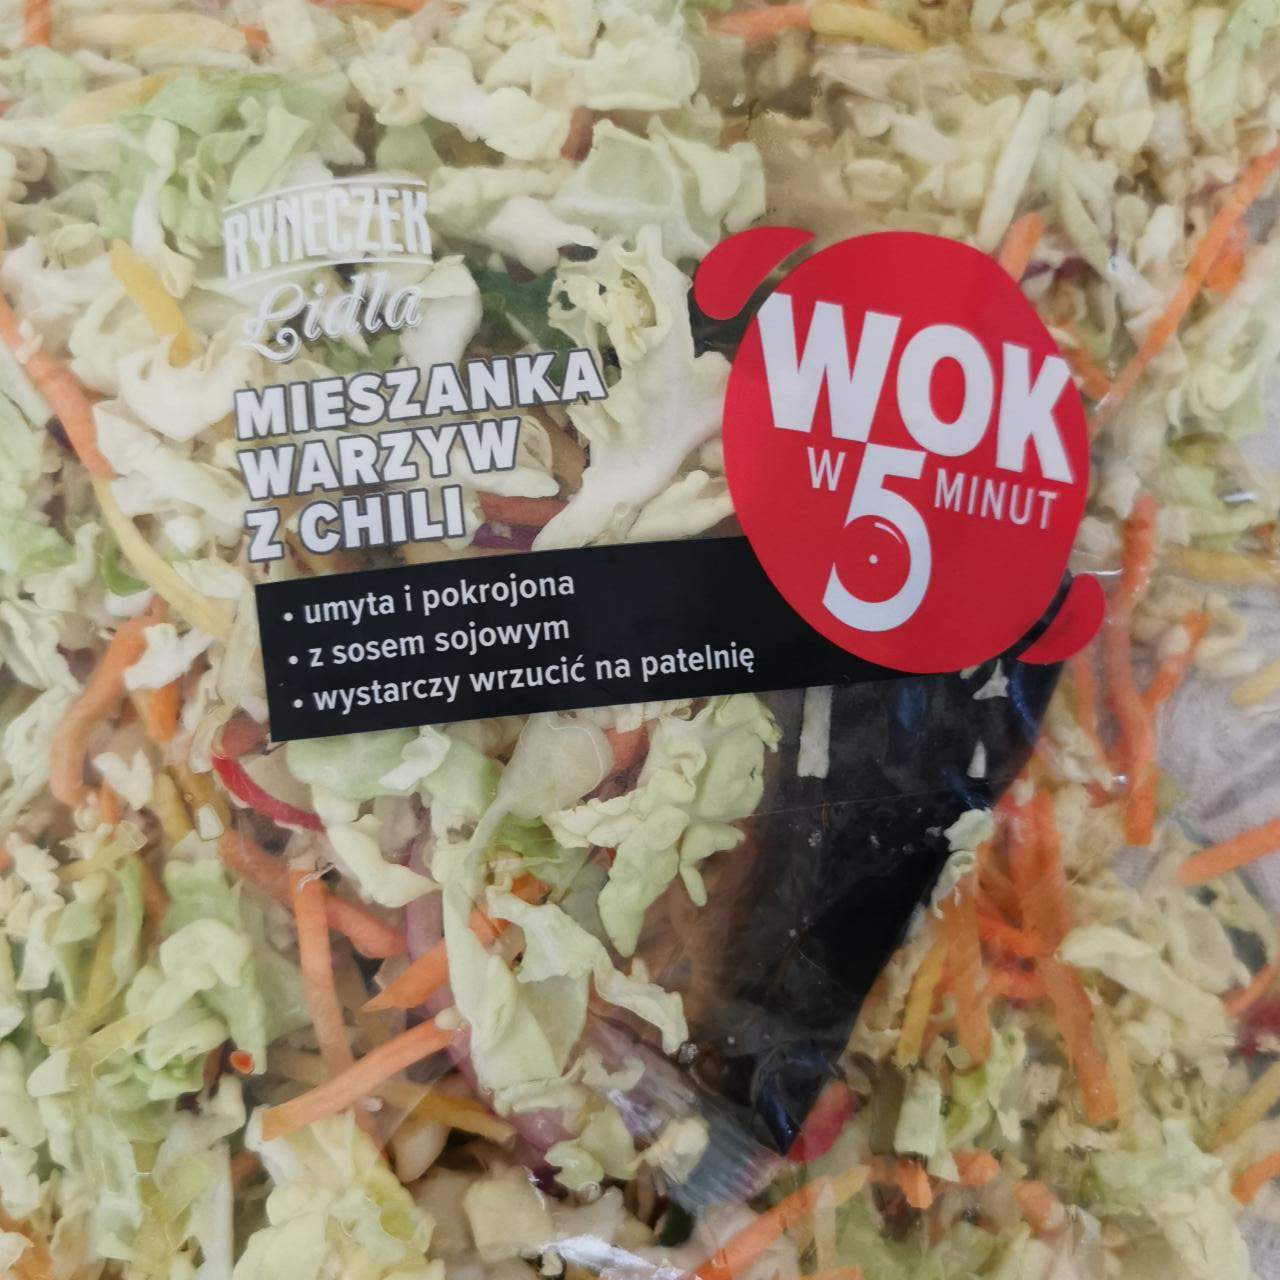 Zdjęcia - Mieszanka warzyw z chili Wok w 5 minut Ryneczek Lidla